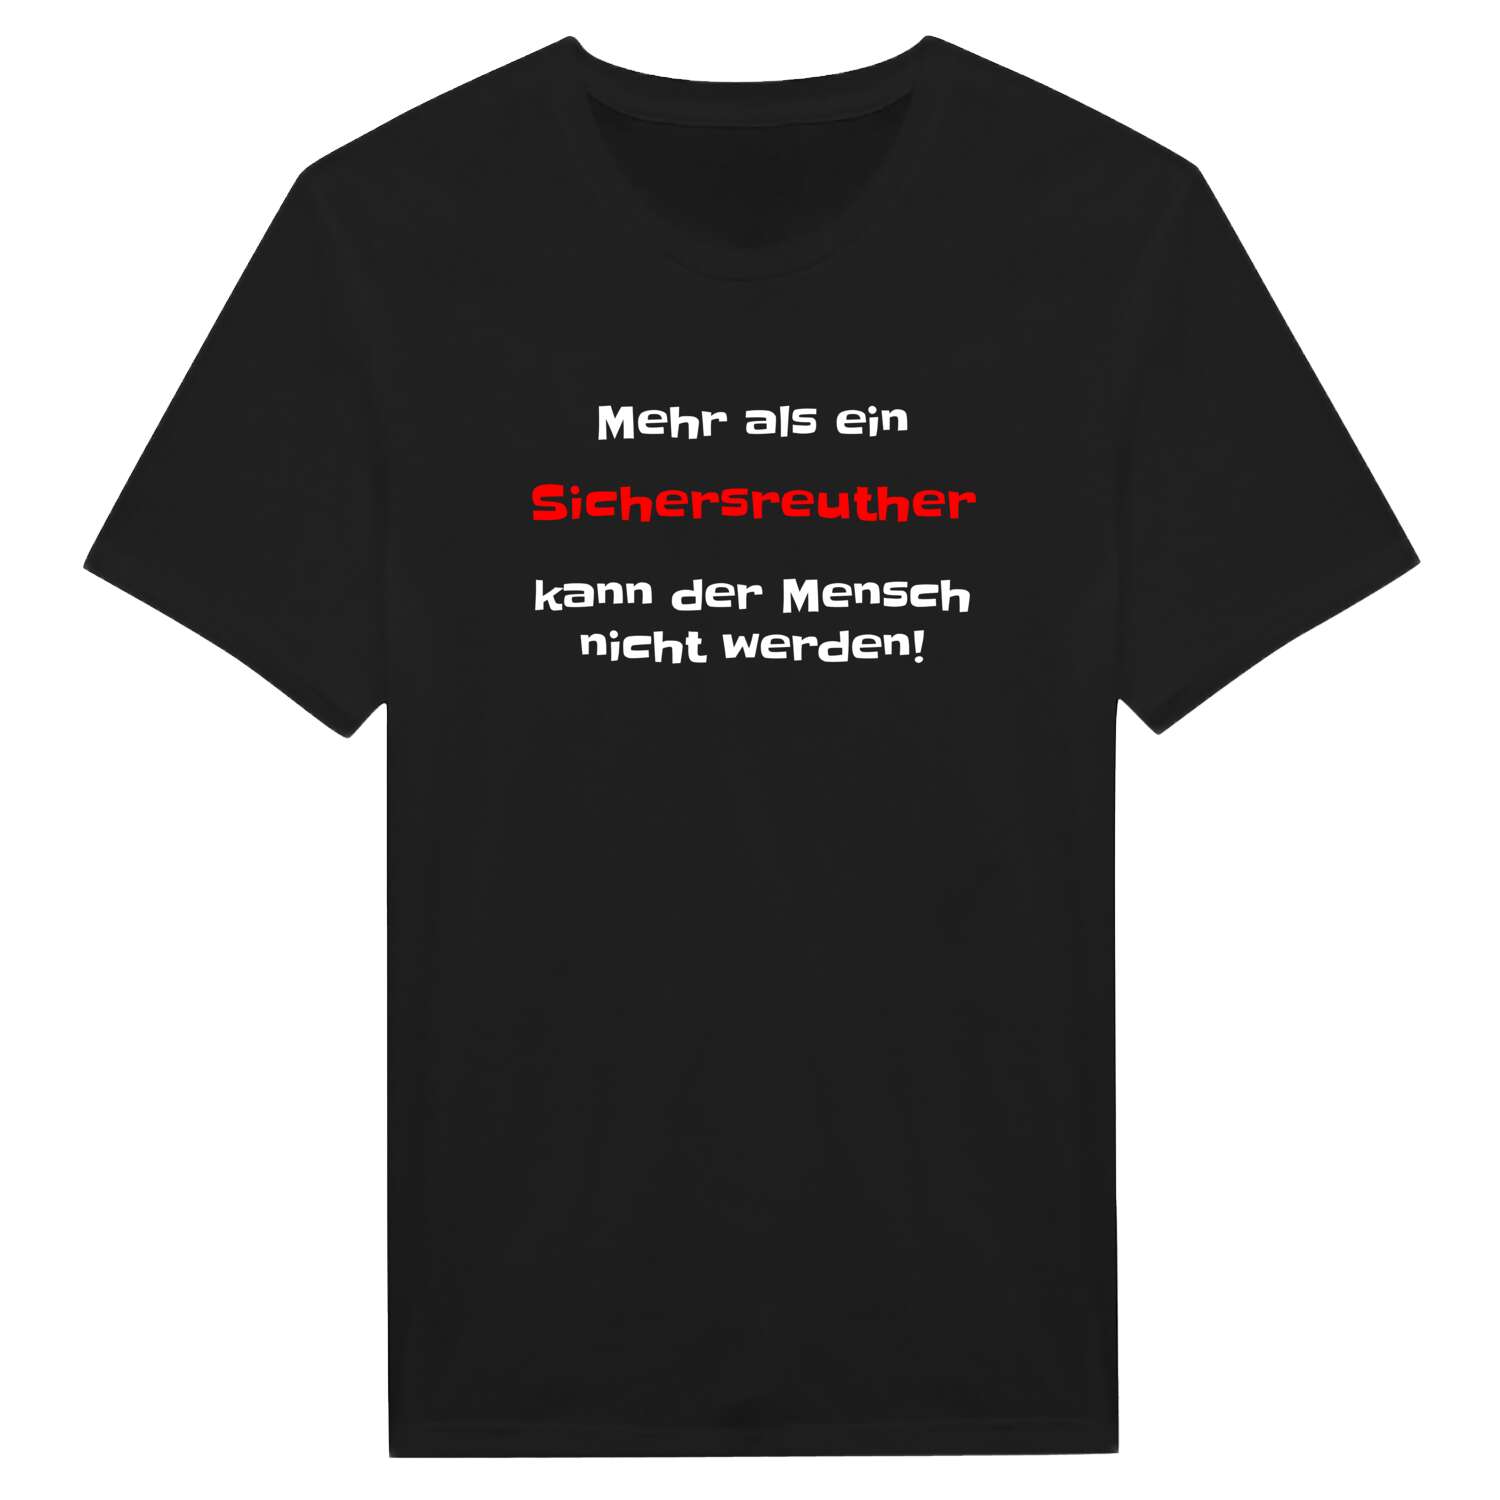 Sichersreuth T-Shirt »Mehr als ein«